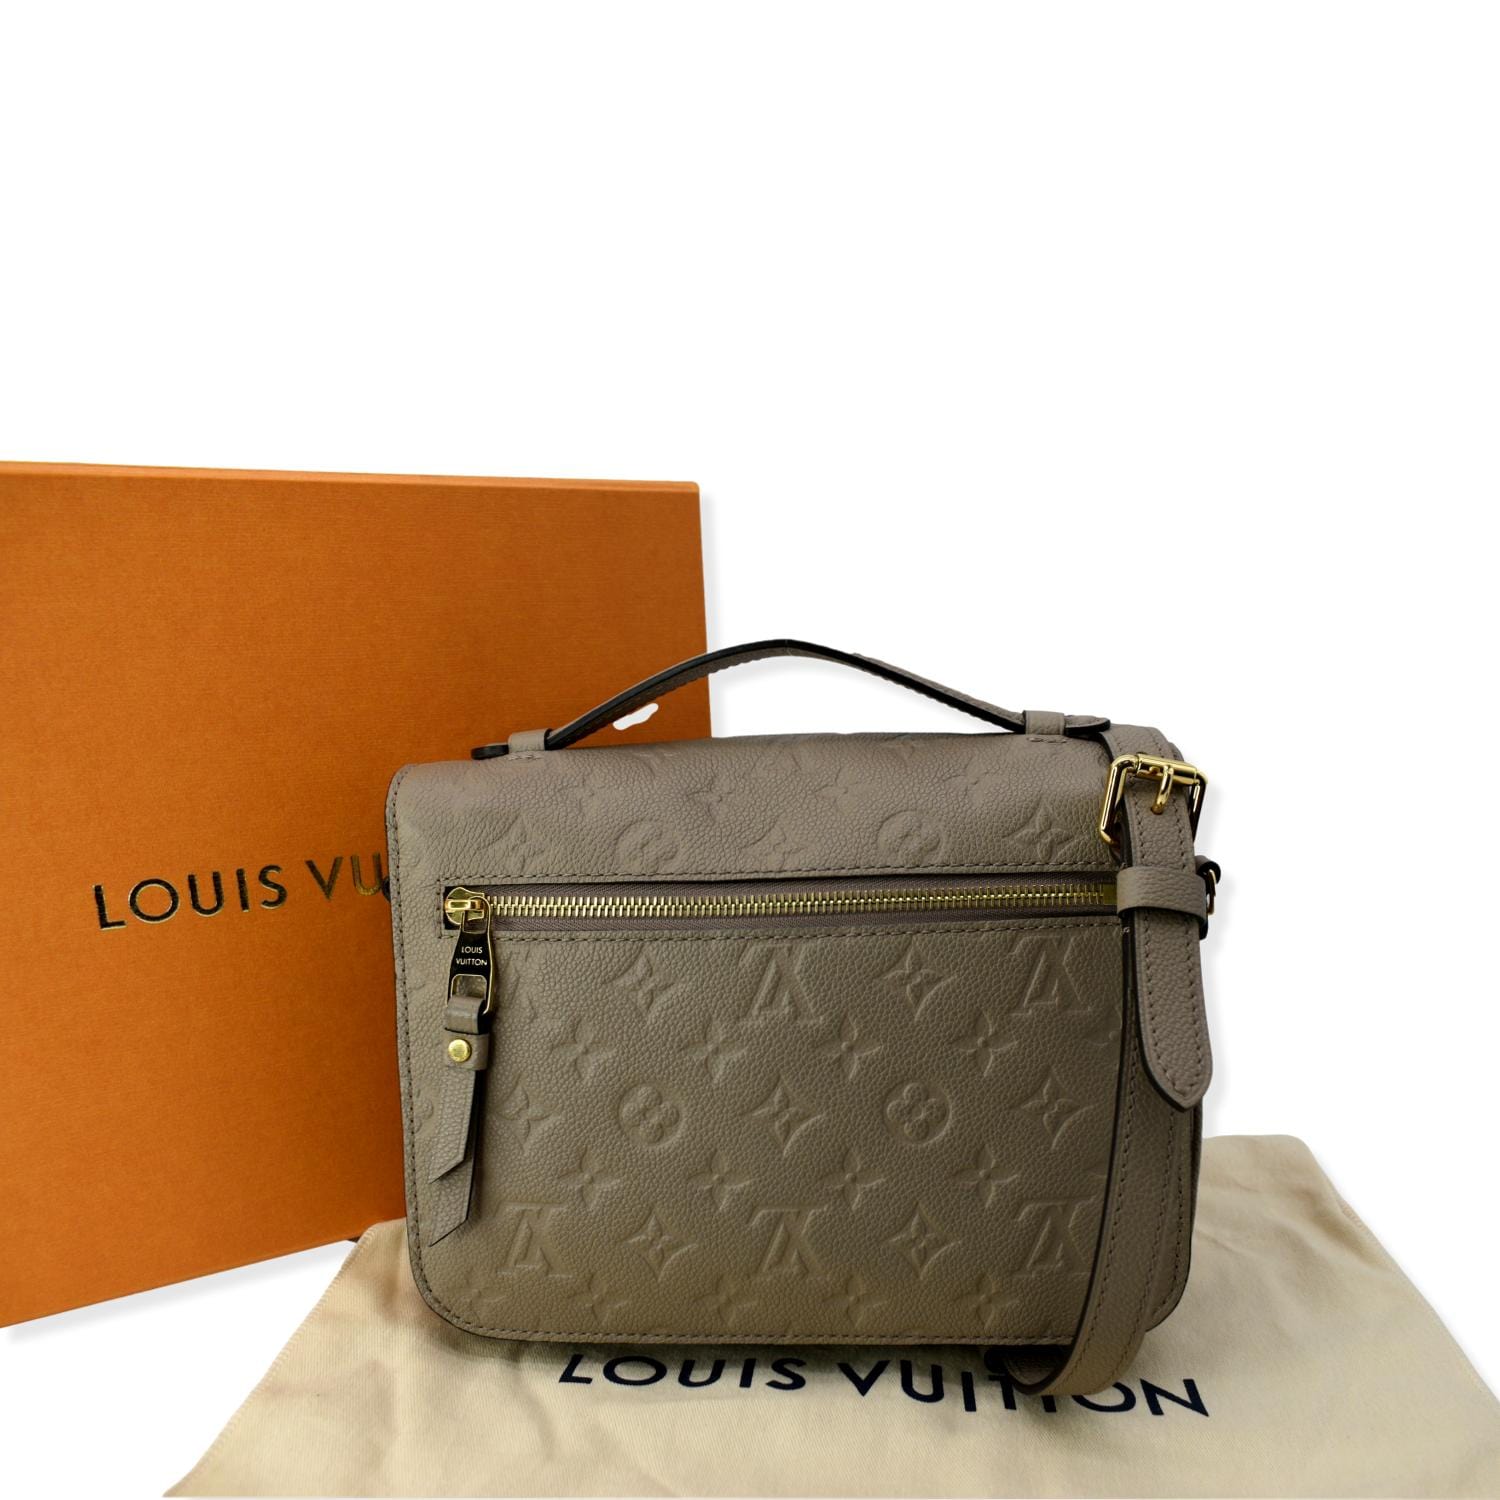 100% Authentic Gorgeous Louis Vuitton Pochette Métis Empreinte Noir  Excellent Condition Includes dust bag and strap 9.8 x 7.5 Full Sett…